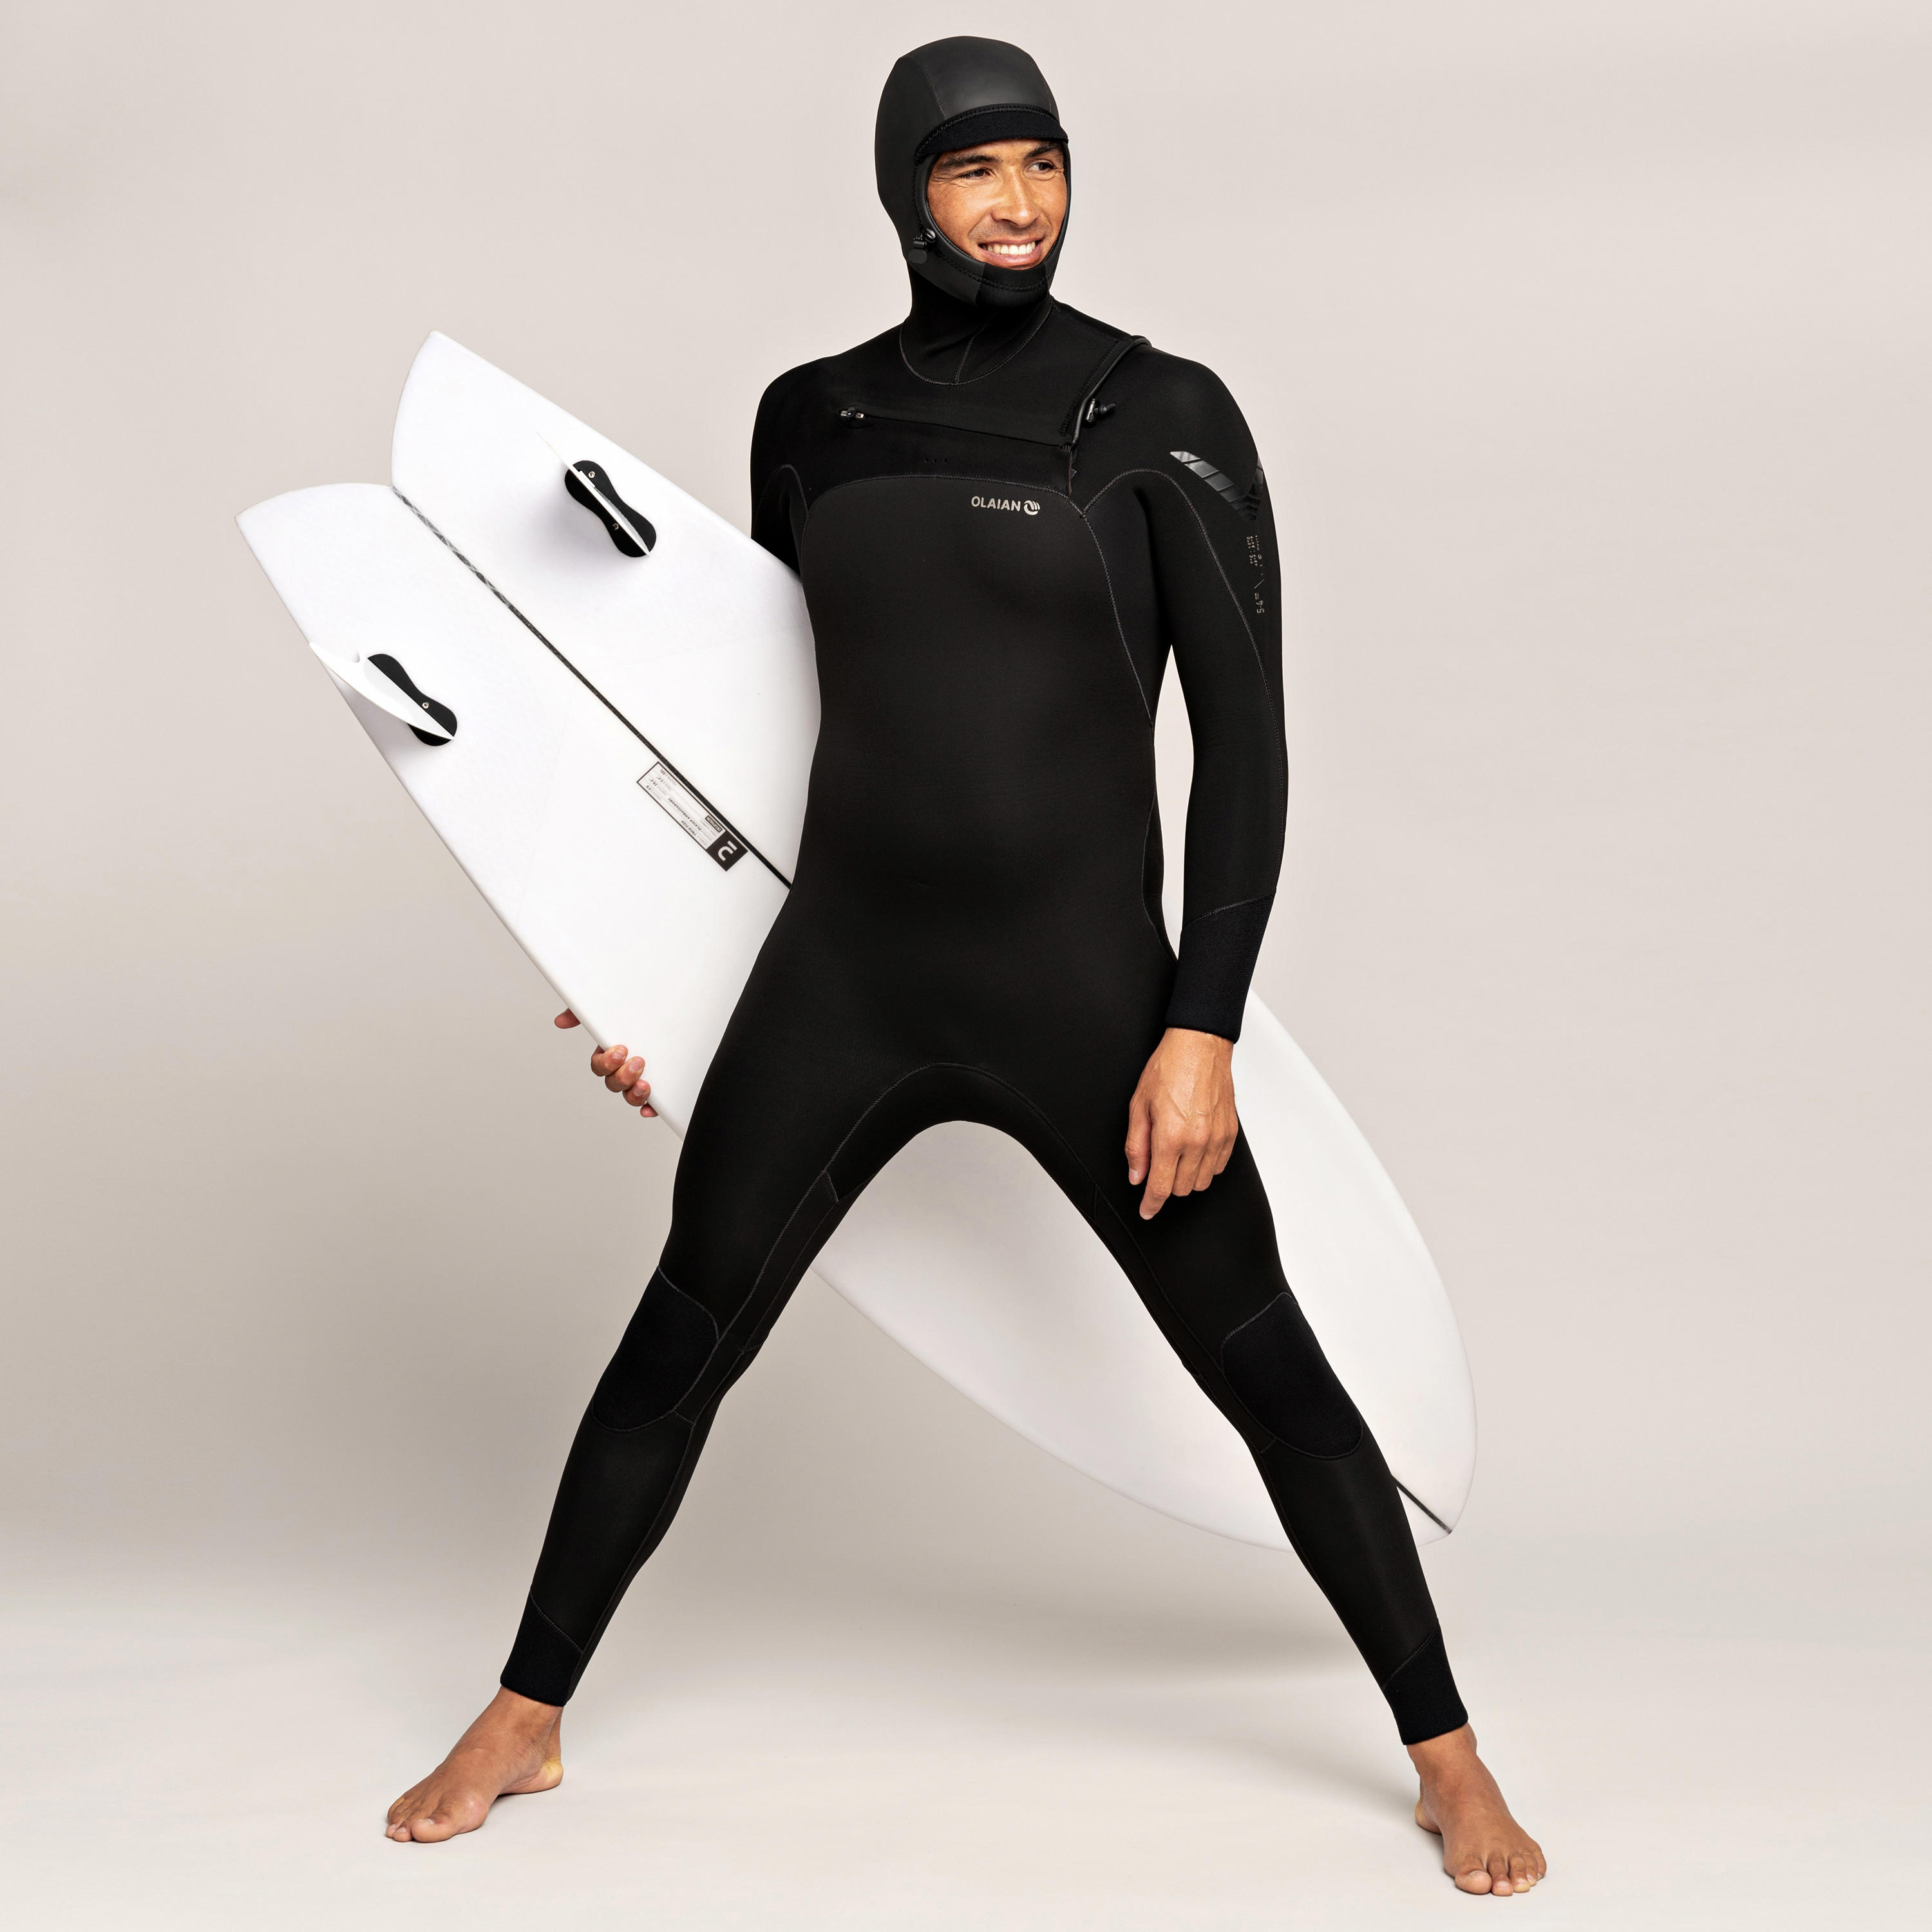 OLAIAN Neoprenanzug Surfen Herren 900 5/4 mm mit Kopfhaube XL